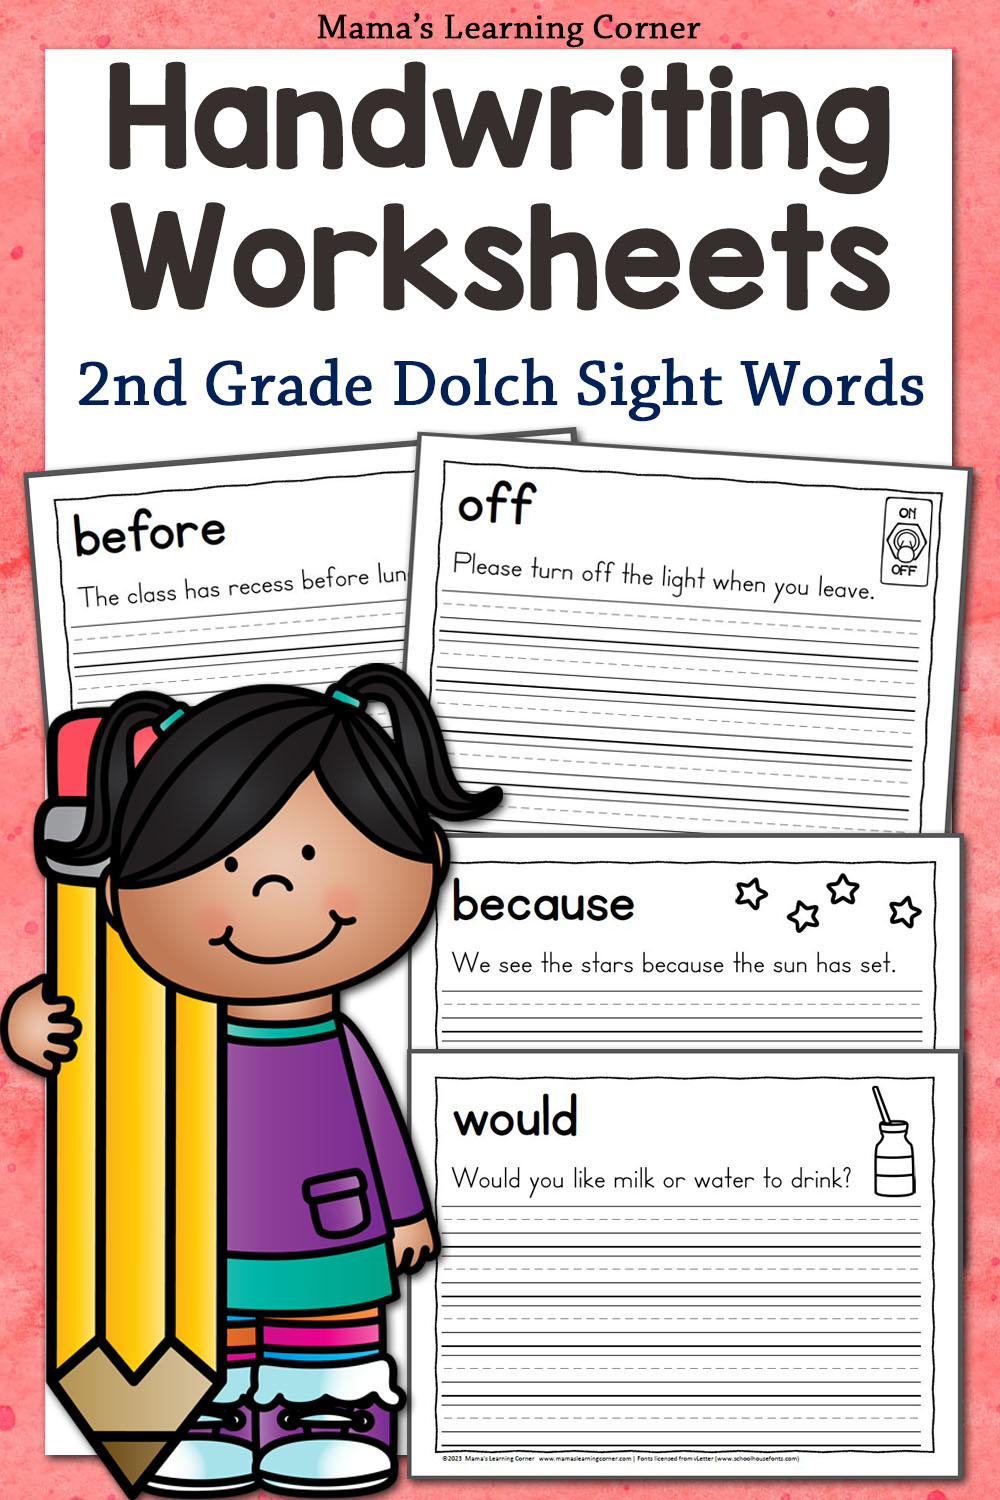 2nd Grade Dolch Sight Words Handwriting Worksheets - Mamas